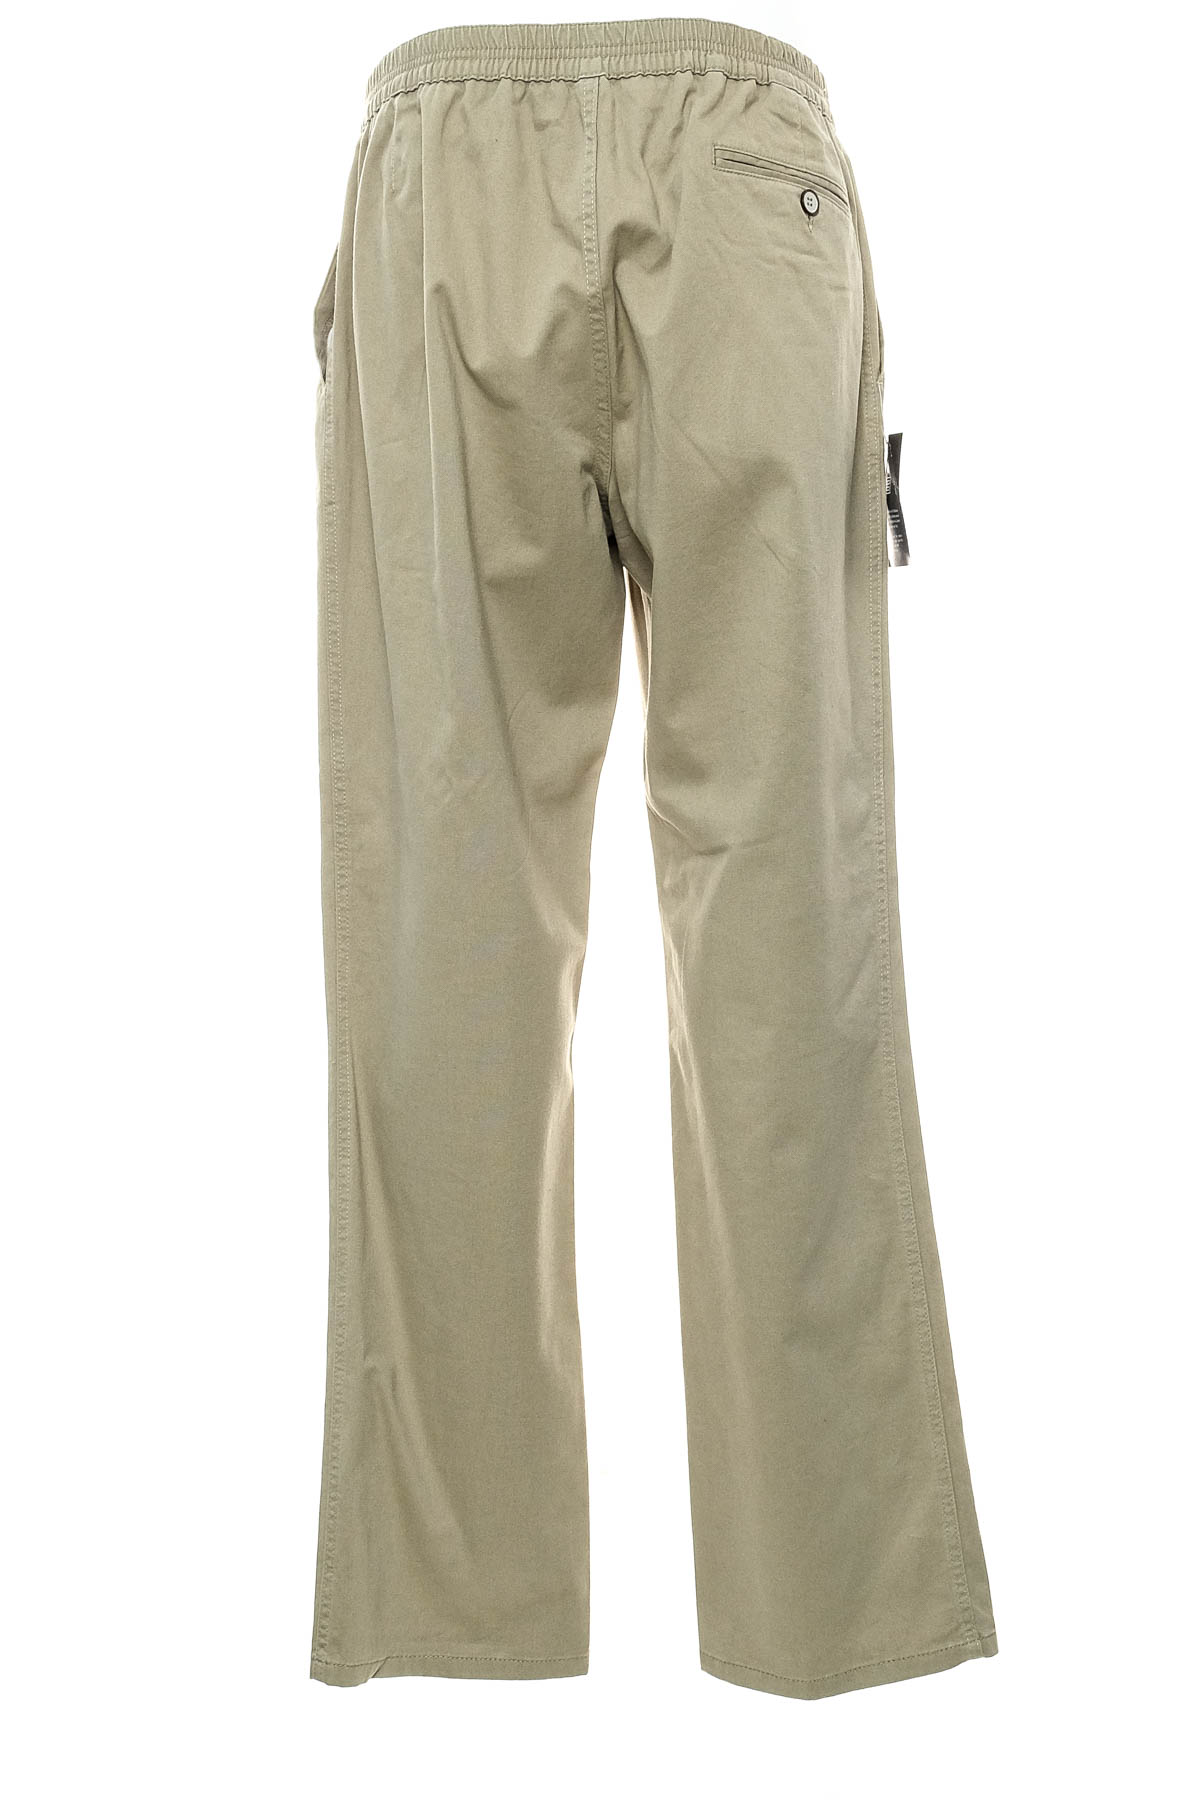 Pantalon pentru bărbați - Babista - 1